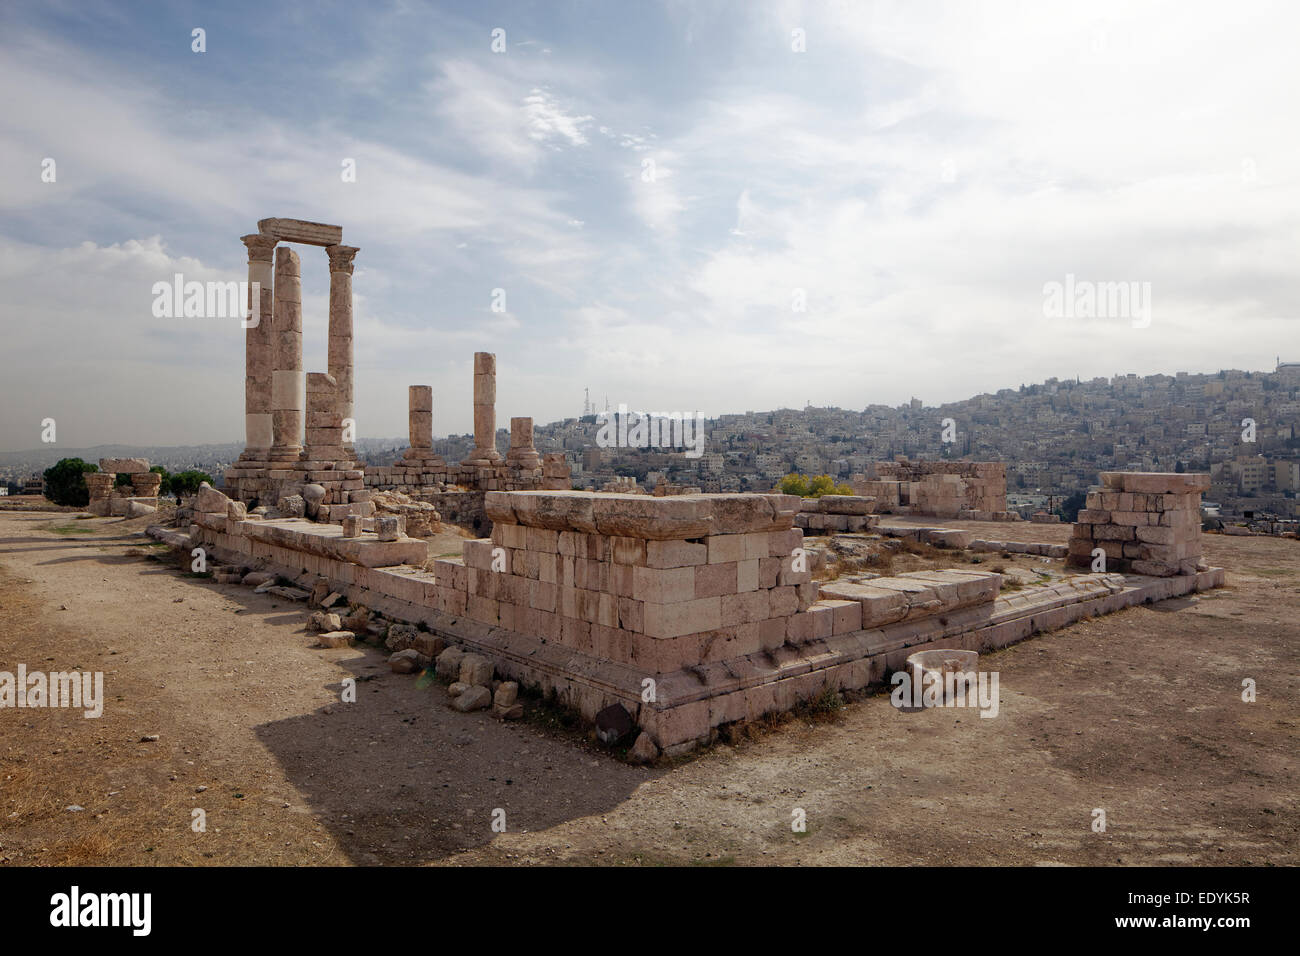 Temple of Hercules, Jabal el Qala, Amman Citadel, ruins, columns, Amman, Jordan Stock Photo